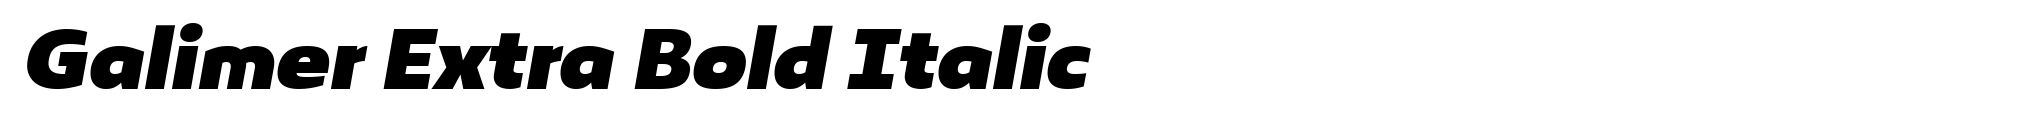 Galimer Extra Bold Italic image